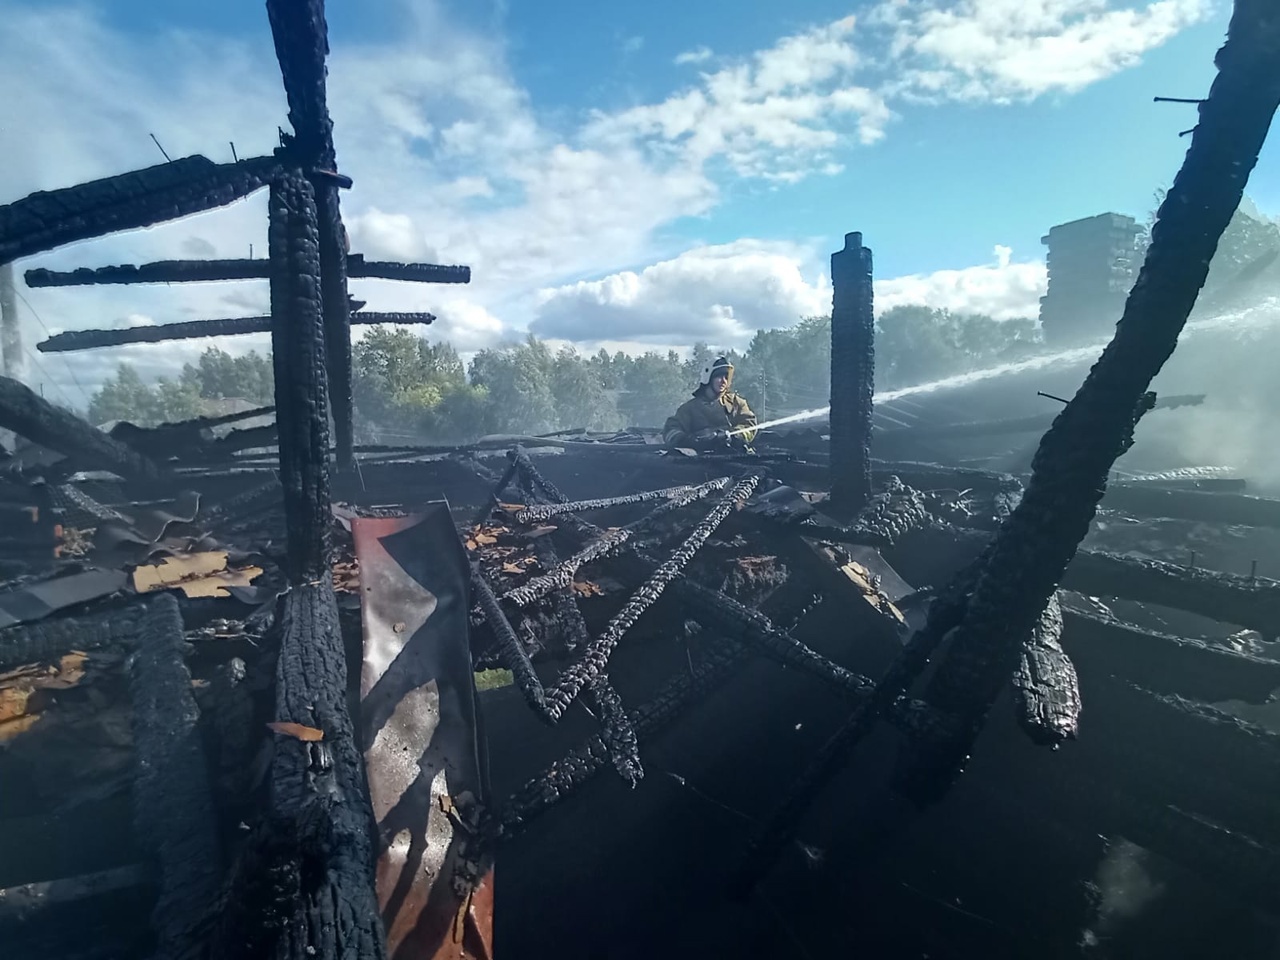  Жильцов дома в Карелии эвакуировали из-за пожара в соседнем здании (ФОТО)